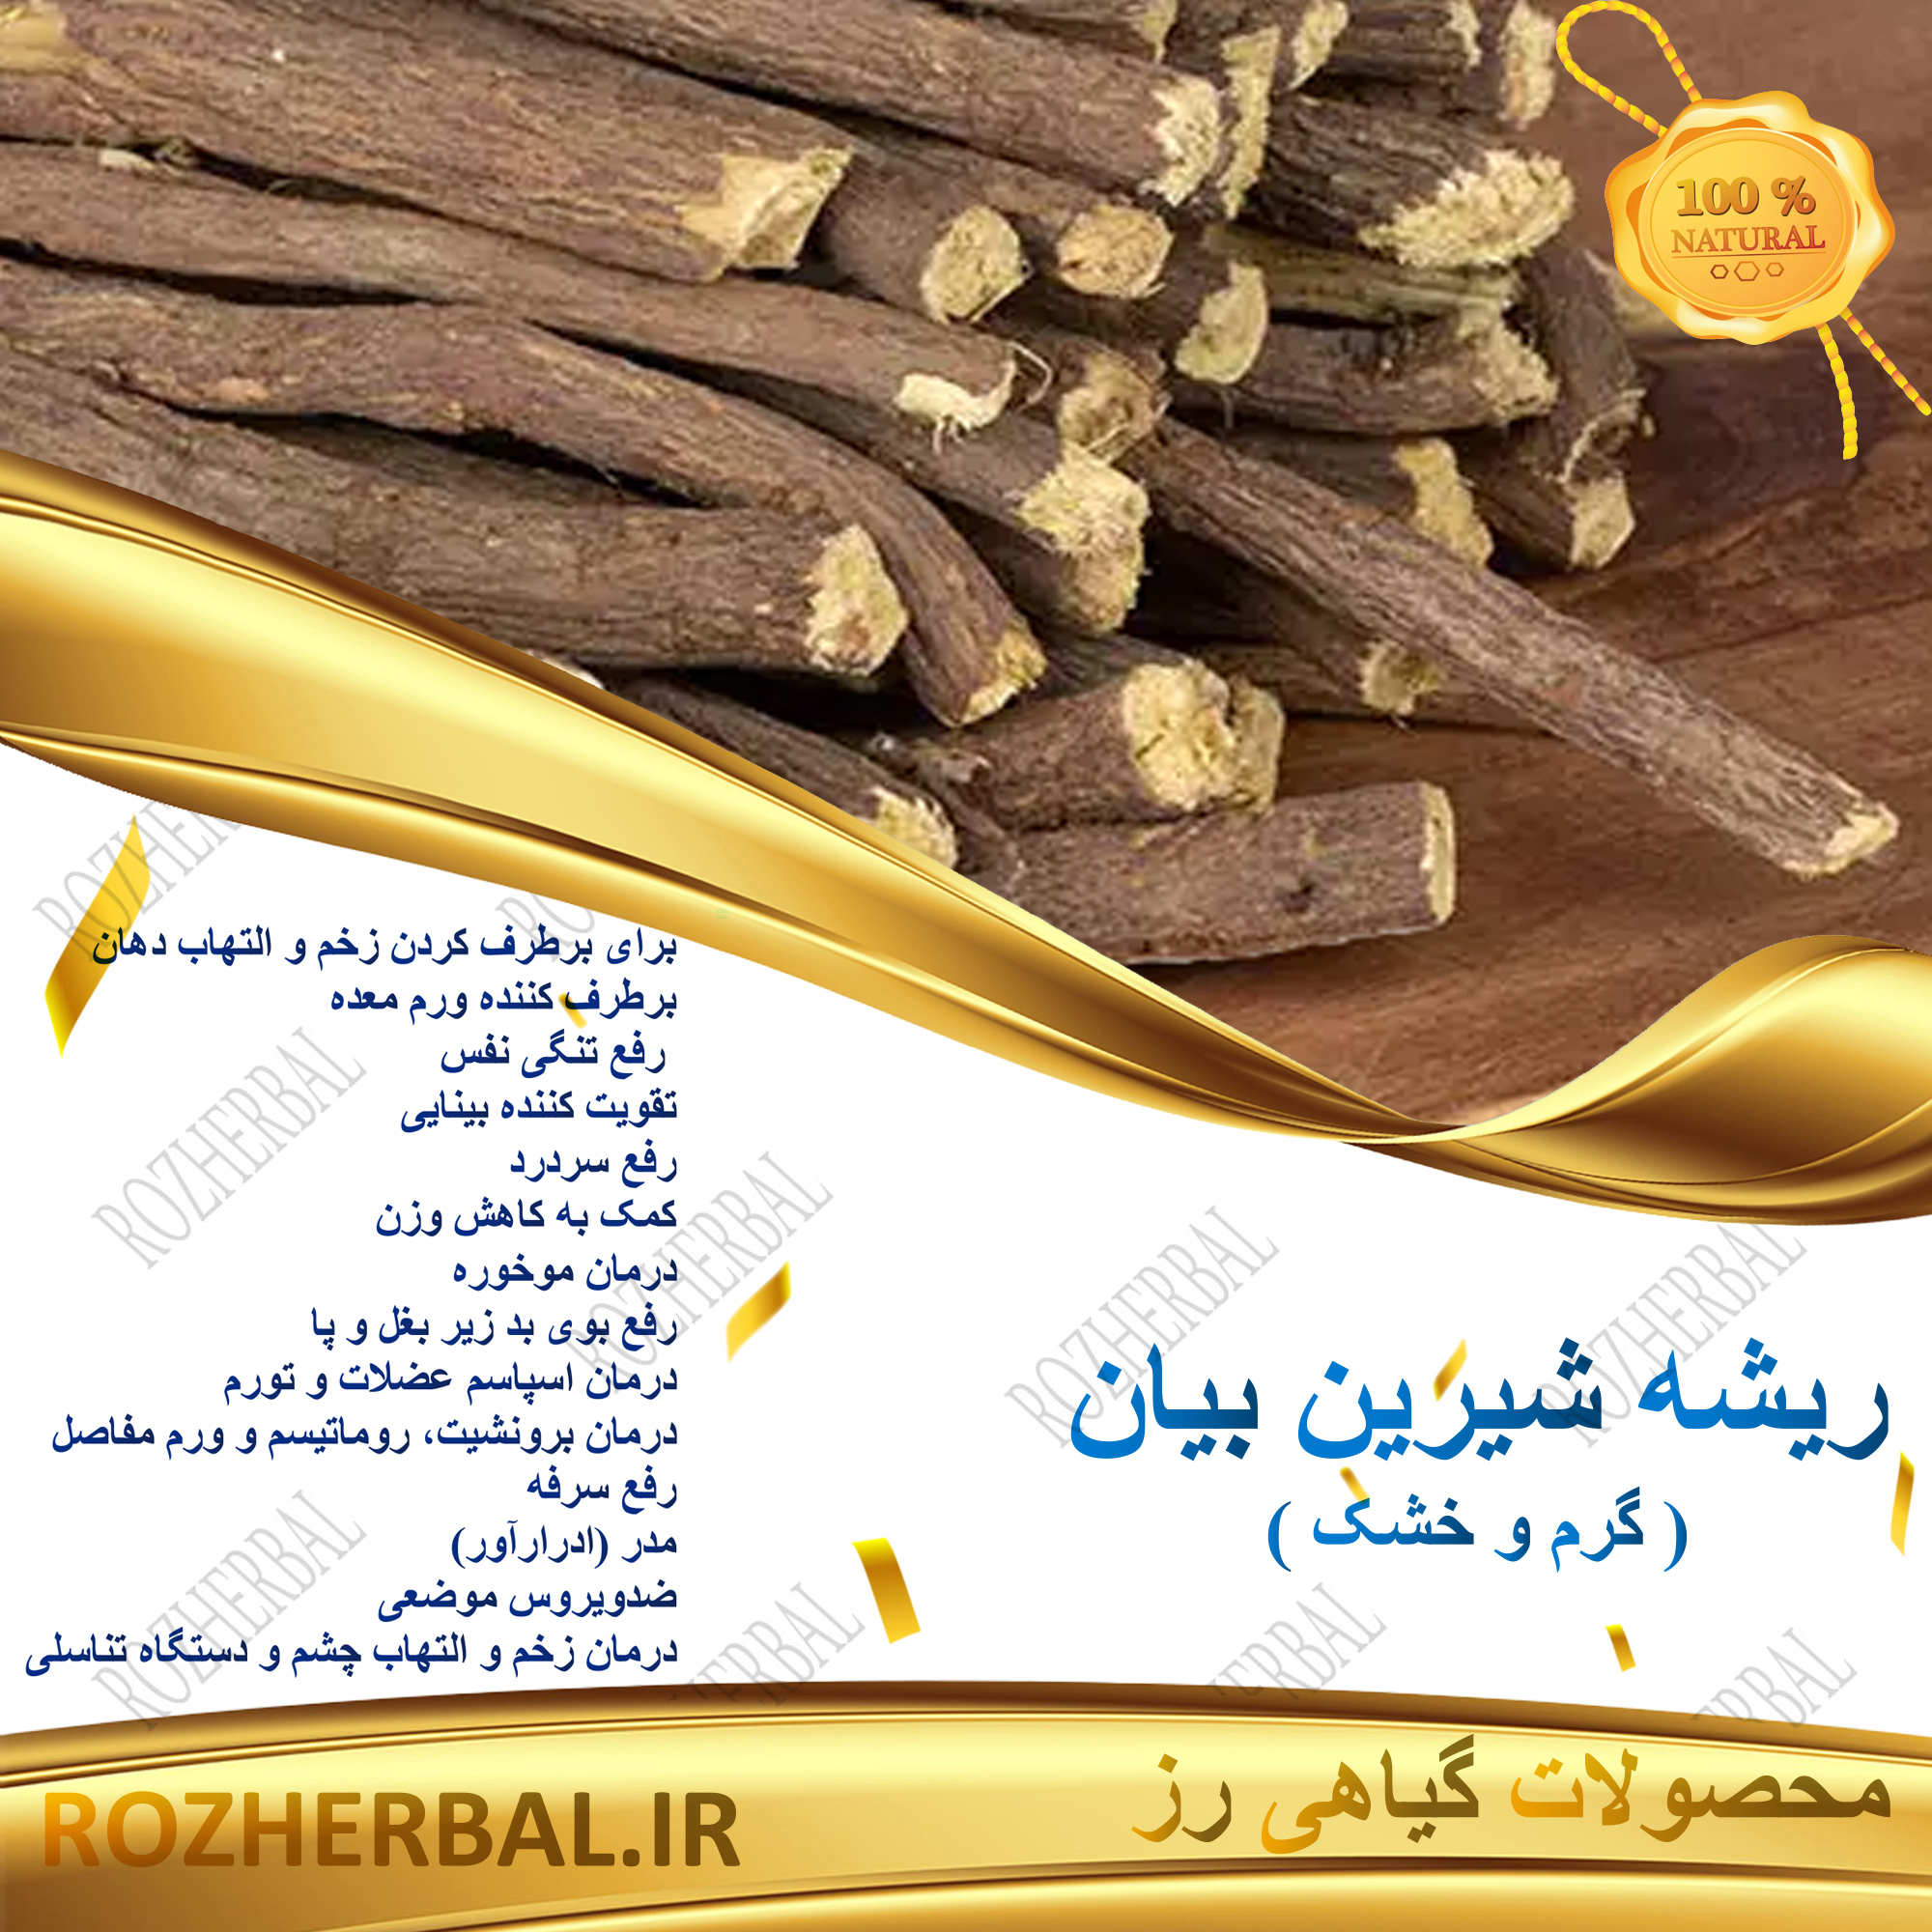 ریشه شیرین بیان ایرانی 1 کیلوگرمی